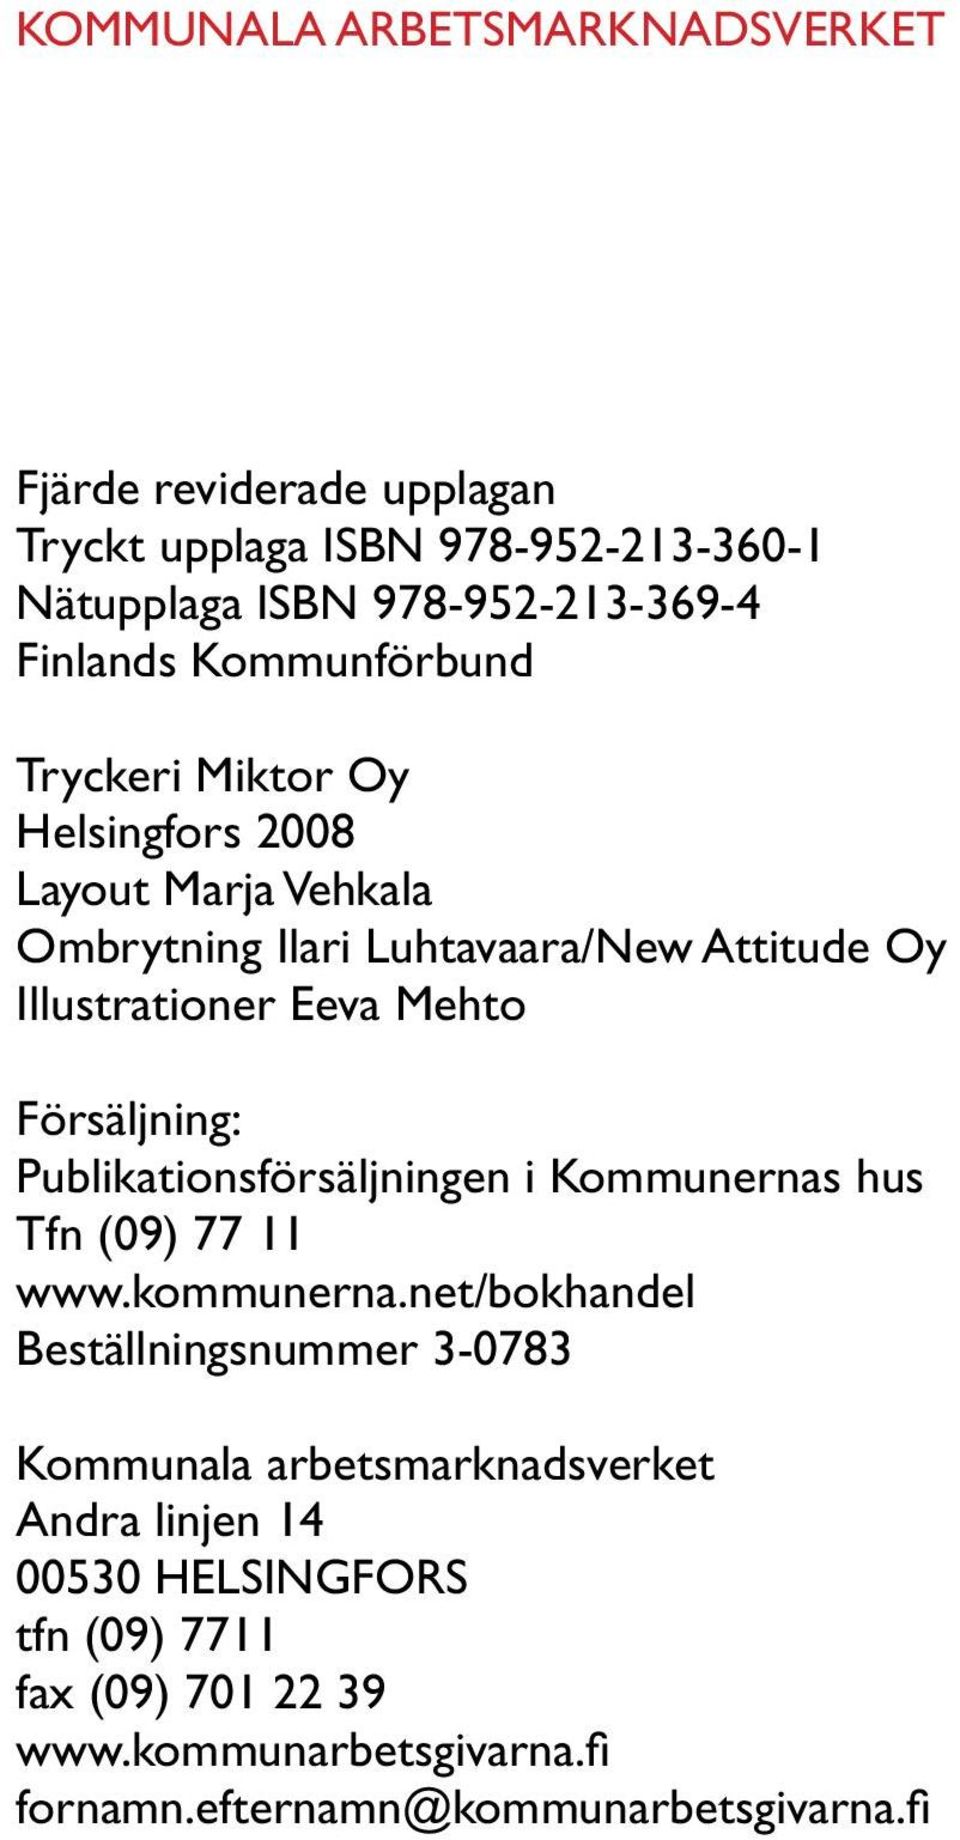 Försäljning: Publikationsförsäljningen i Kommunernas hus Tfn (09) 77 11 www.kommunerna.